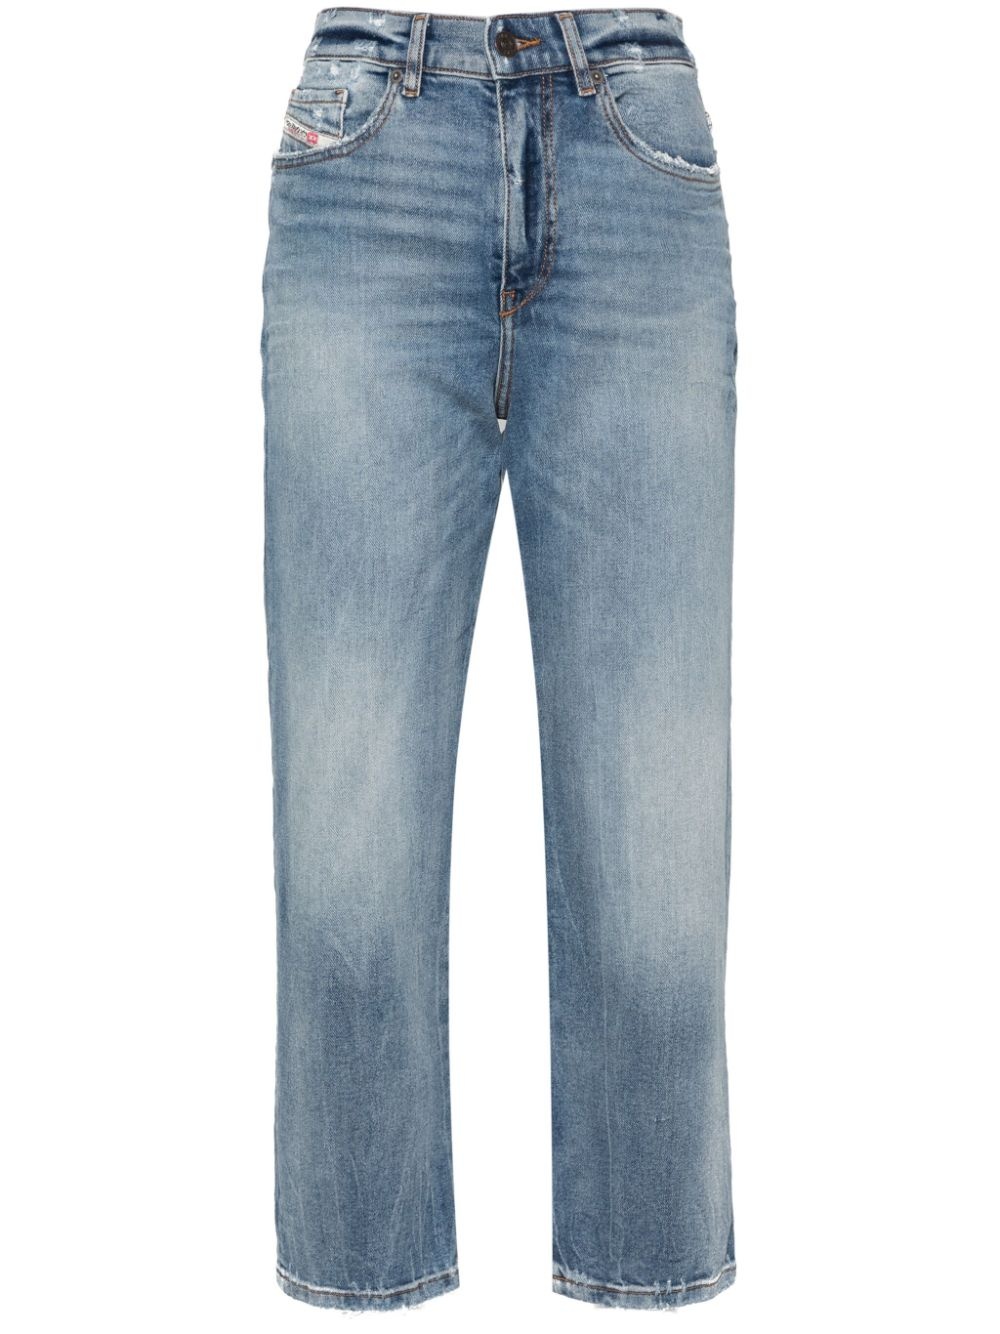 2016 D-Air 0pfar boyfriend jeans - 1